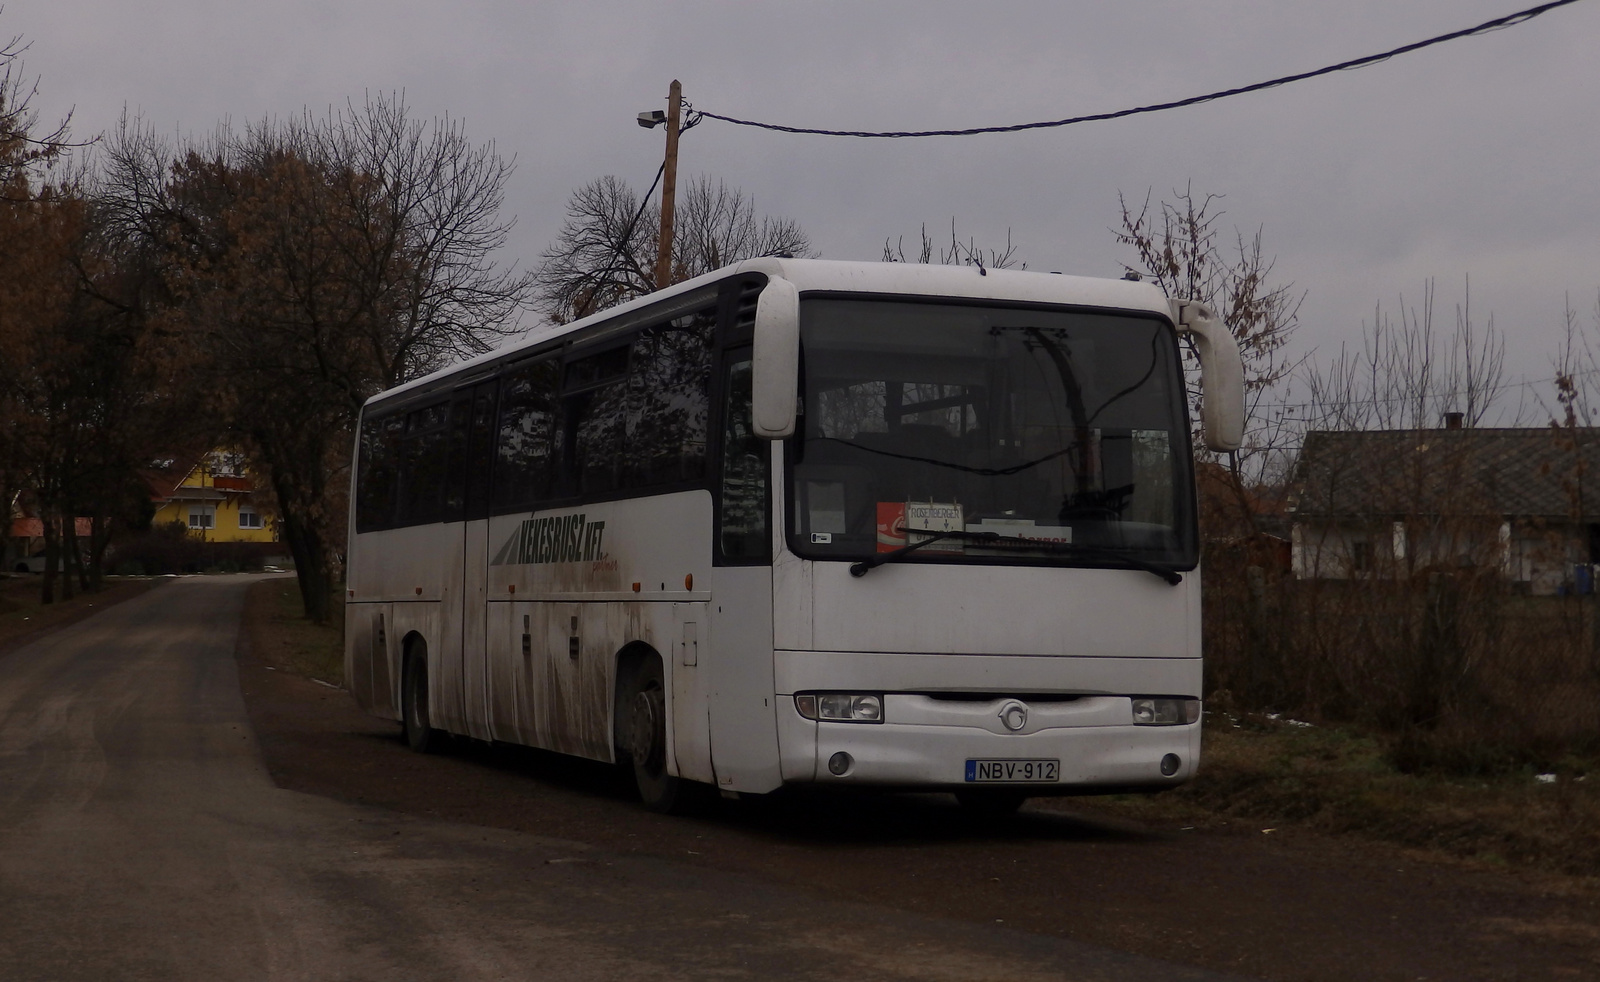 NBV-912 - Irisbus Iliade